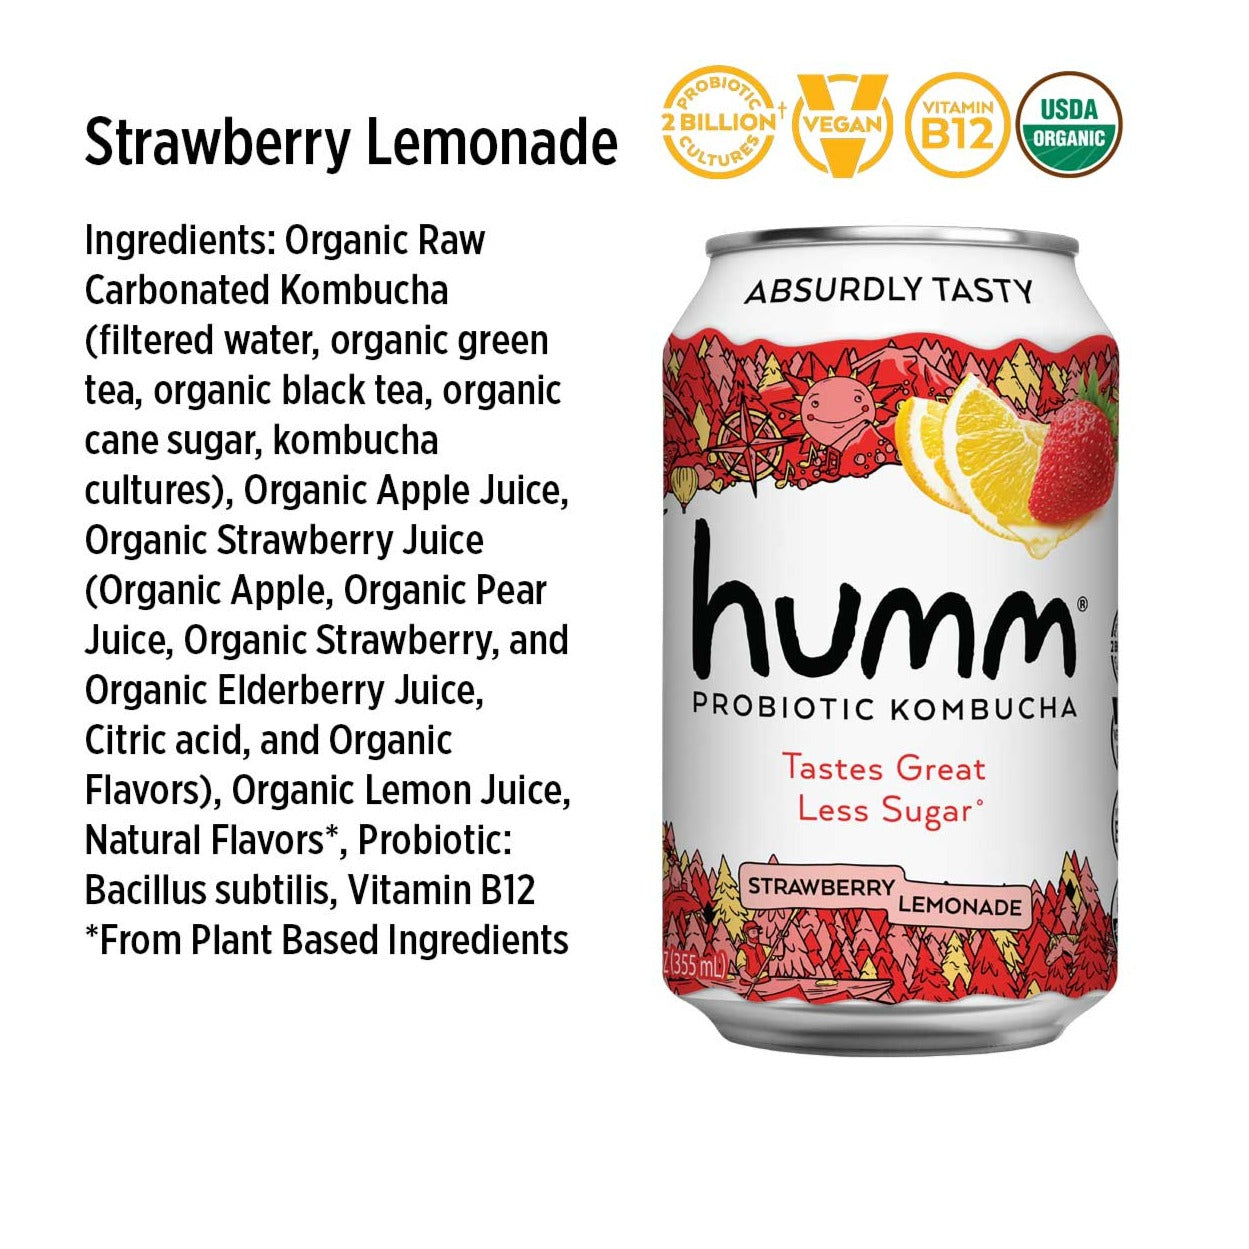 strawberry lemonade ingredients